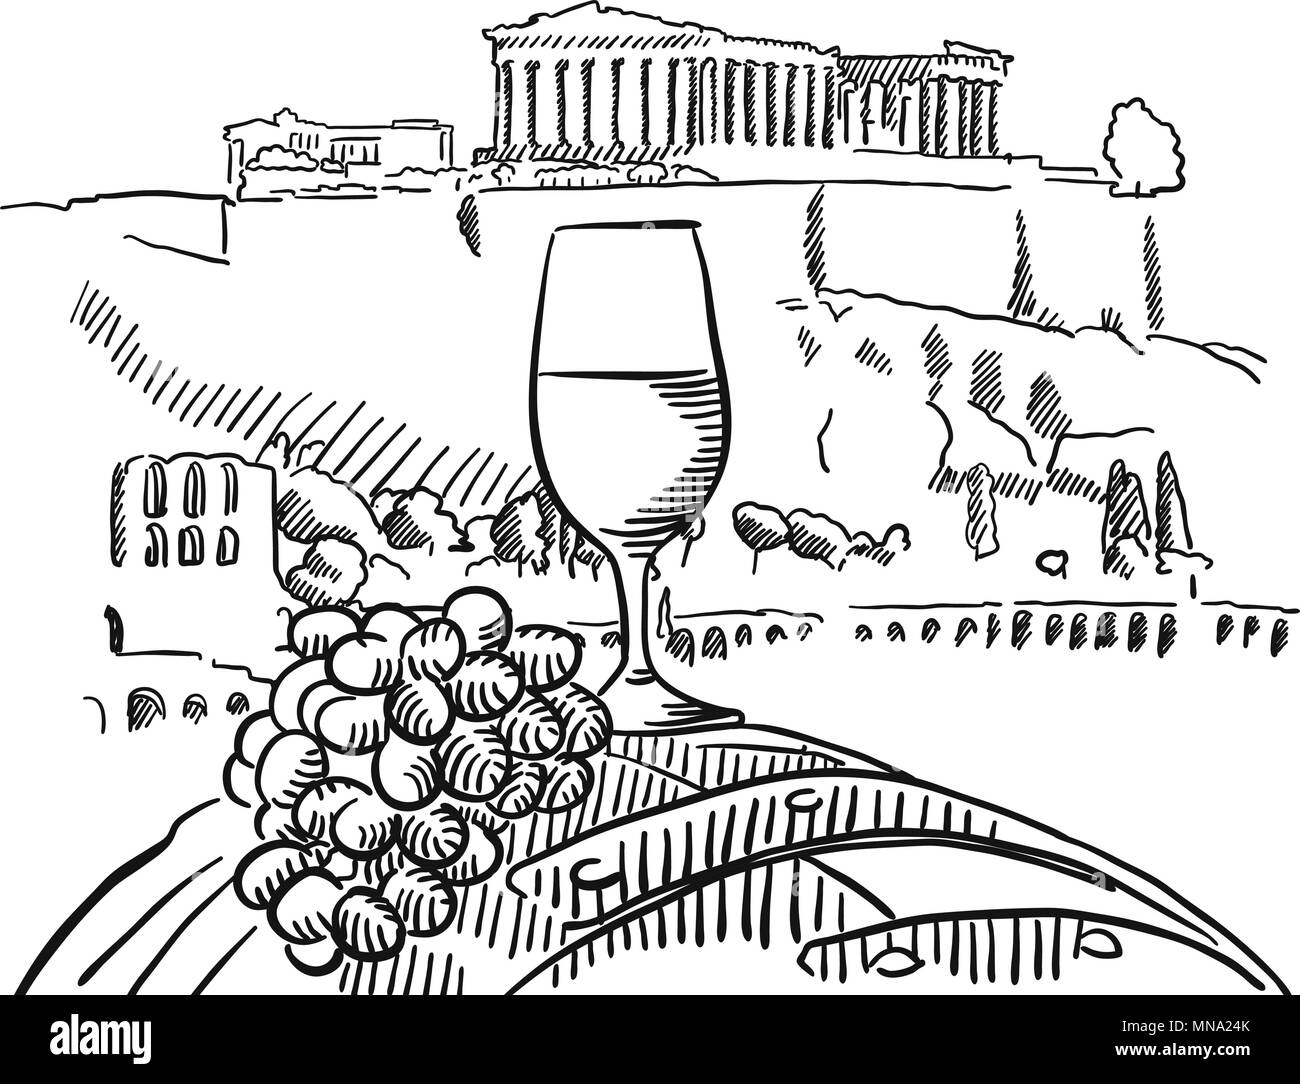 Verre de vigne sur le baril en face de l'Acropole, Athènes, Vector a esquissé les grandes lignes d'art Illustration de Vecteur